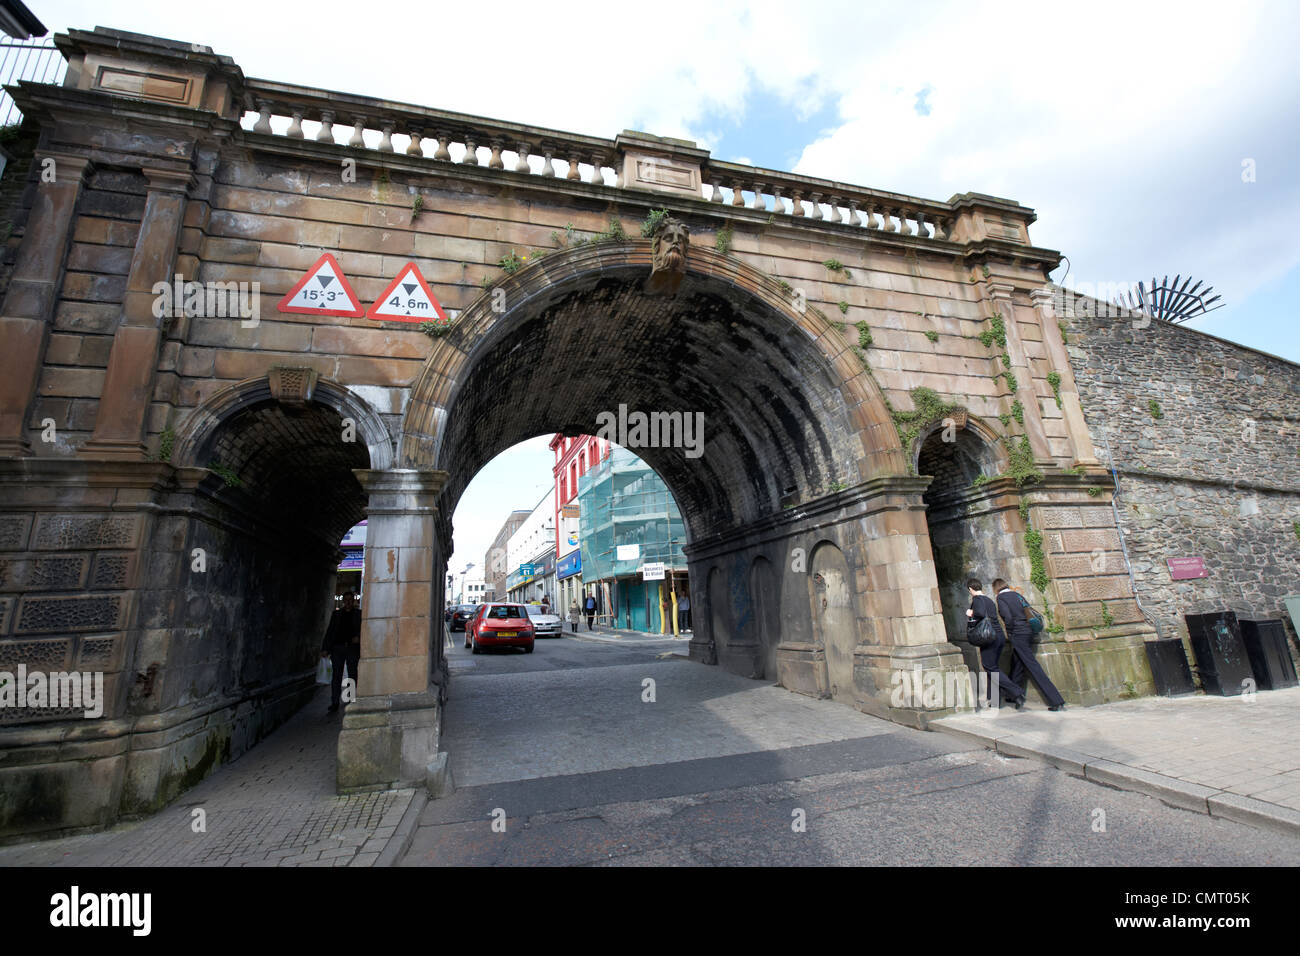 Les gens qui marchent à travers ferryquay gate dans les murs de Derry City county Londonderry en Irlande du Nord au Royaume-Uni. Banque D'Images